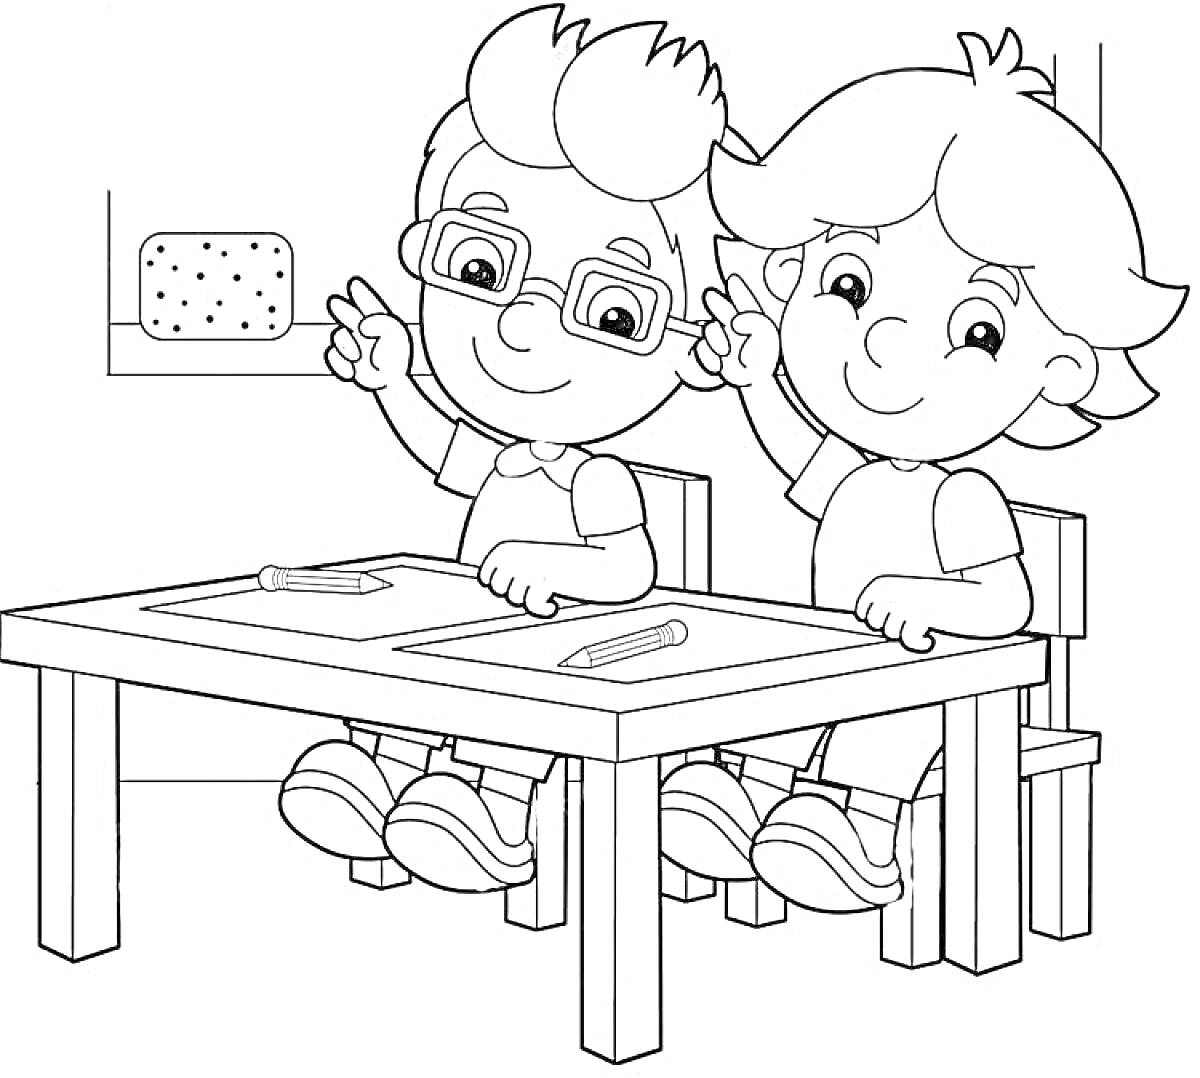 Два ребенка сидят за партой, на парте лежат тетрадки и карандаши, на фоне – классная доска с губкой